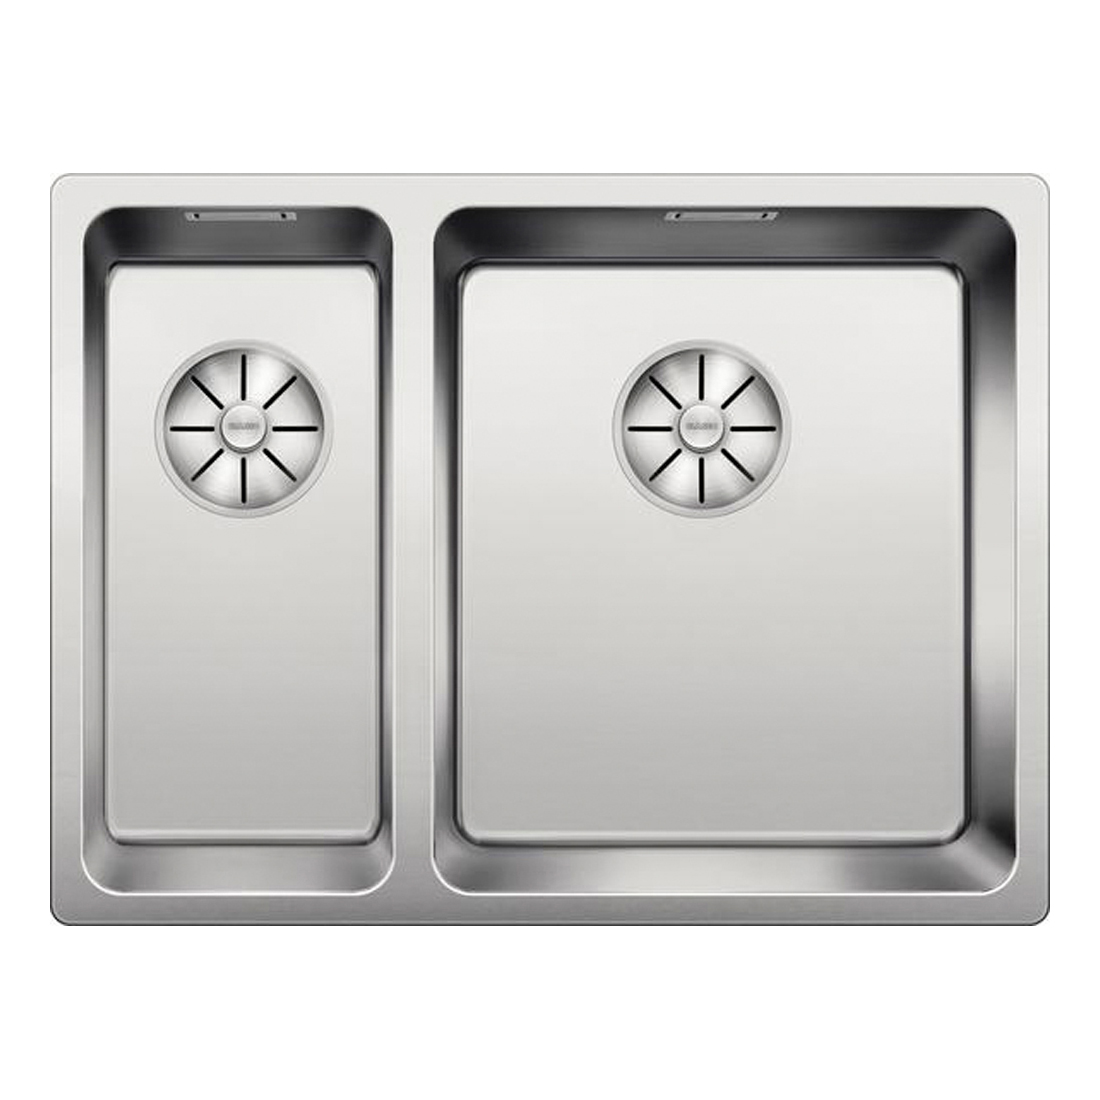 Кухонная мойка Blanco Andano 340/180-IF правая полированная сталь кухонная мойка blanco axis iii 6s if правая зеркальная полировка